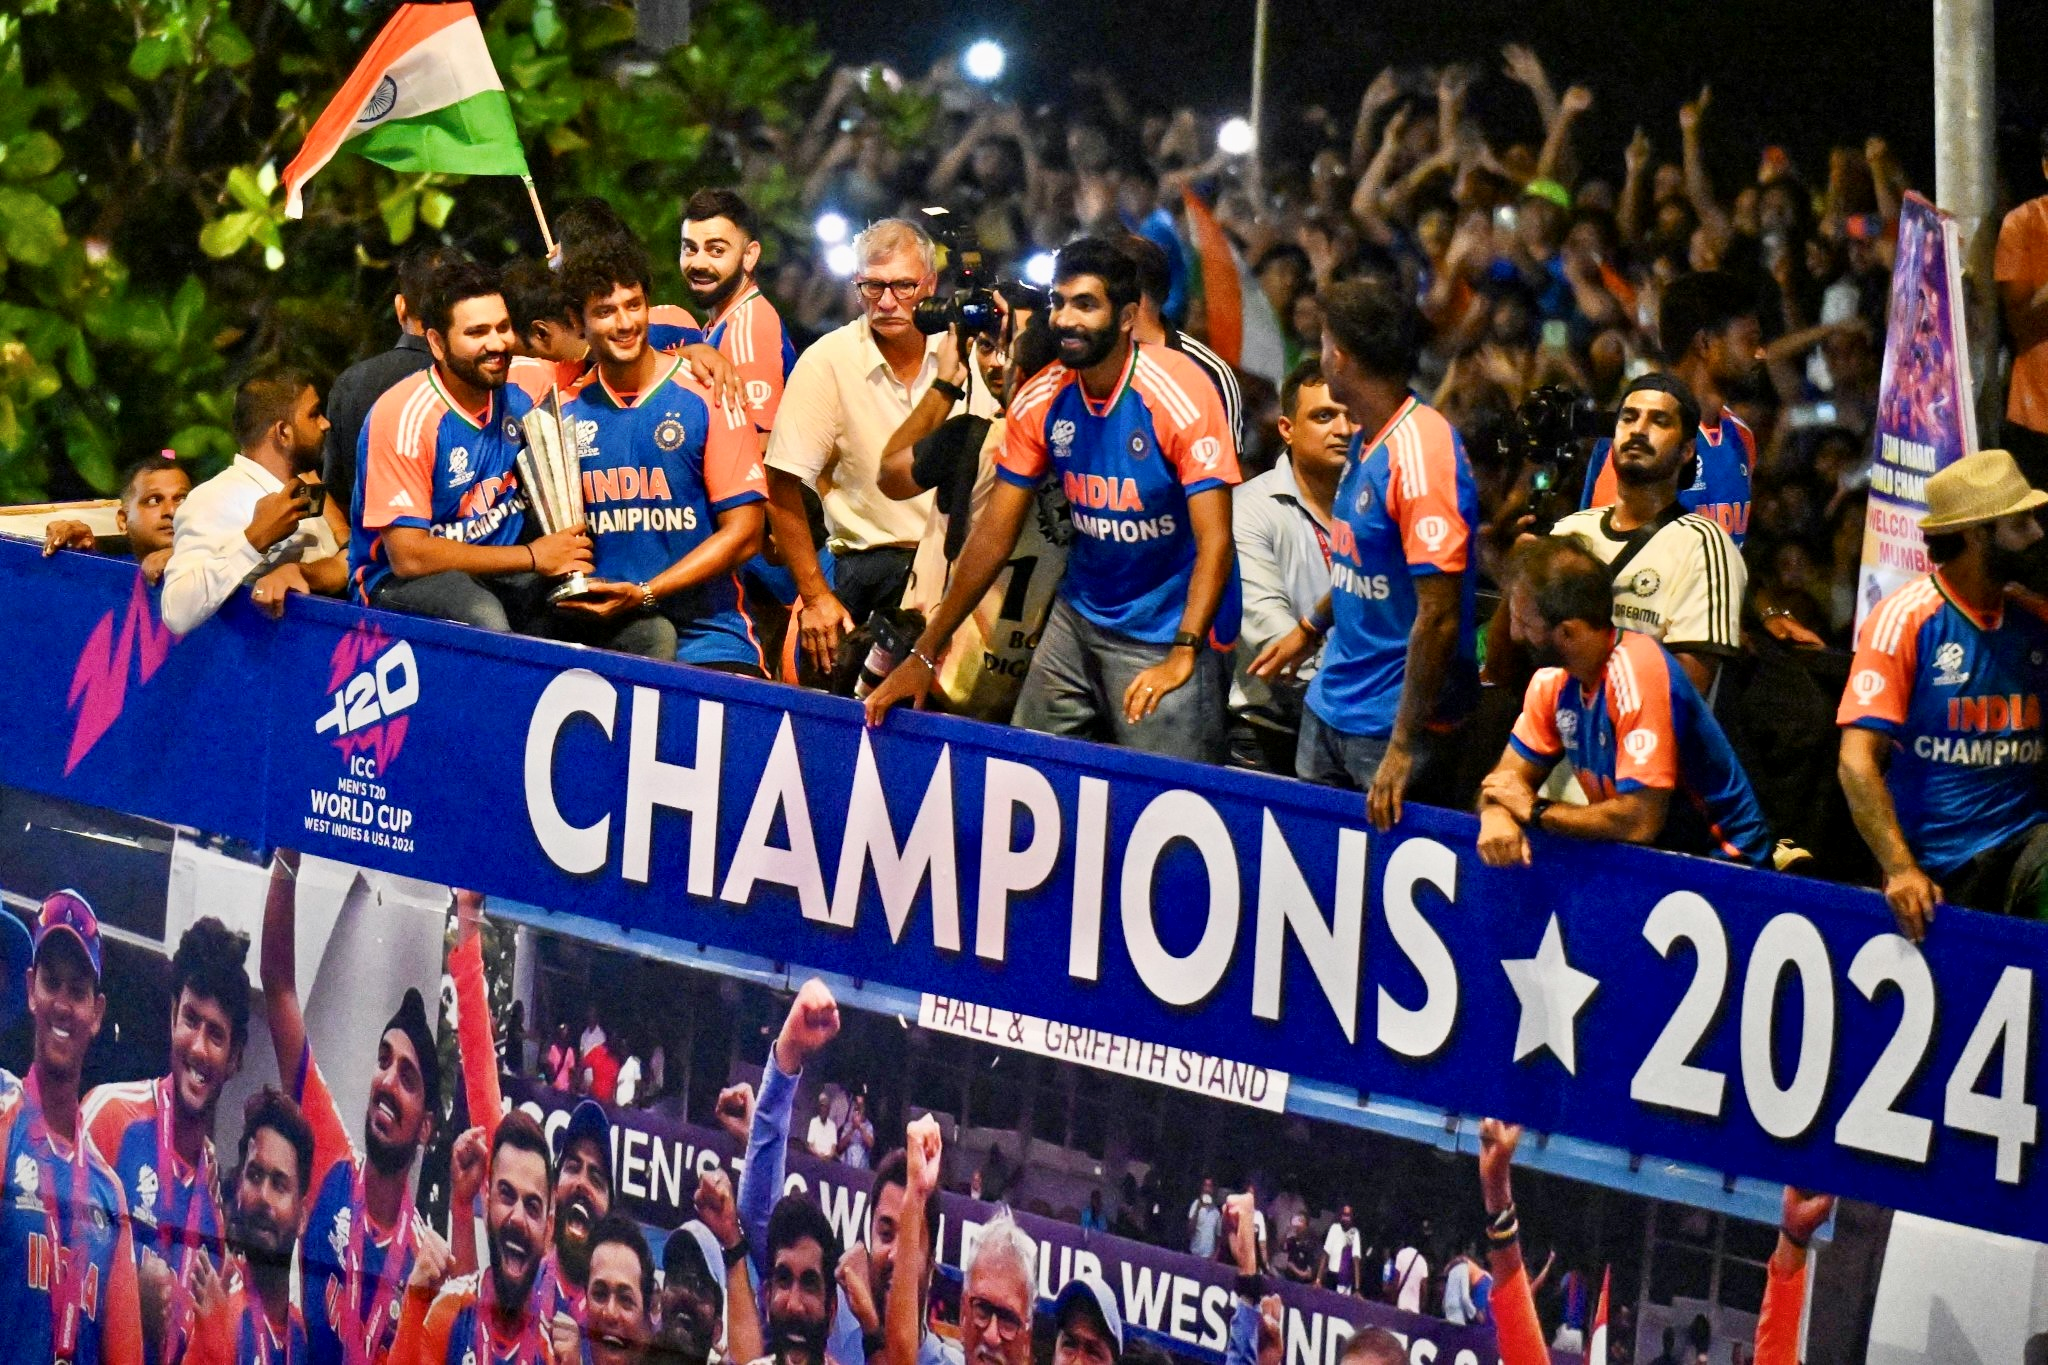 ഇന്ത്യൻ ക്രിക്കറ്റ് ടീം  വിക്‌ടറി പരേഡ്  INDIAN TEAM CELEBRATION  T20 WORLD CUP 2024 CHAMPIONS